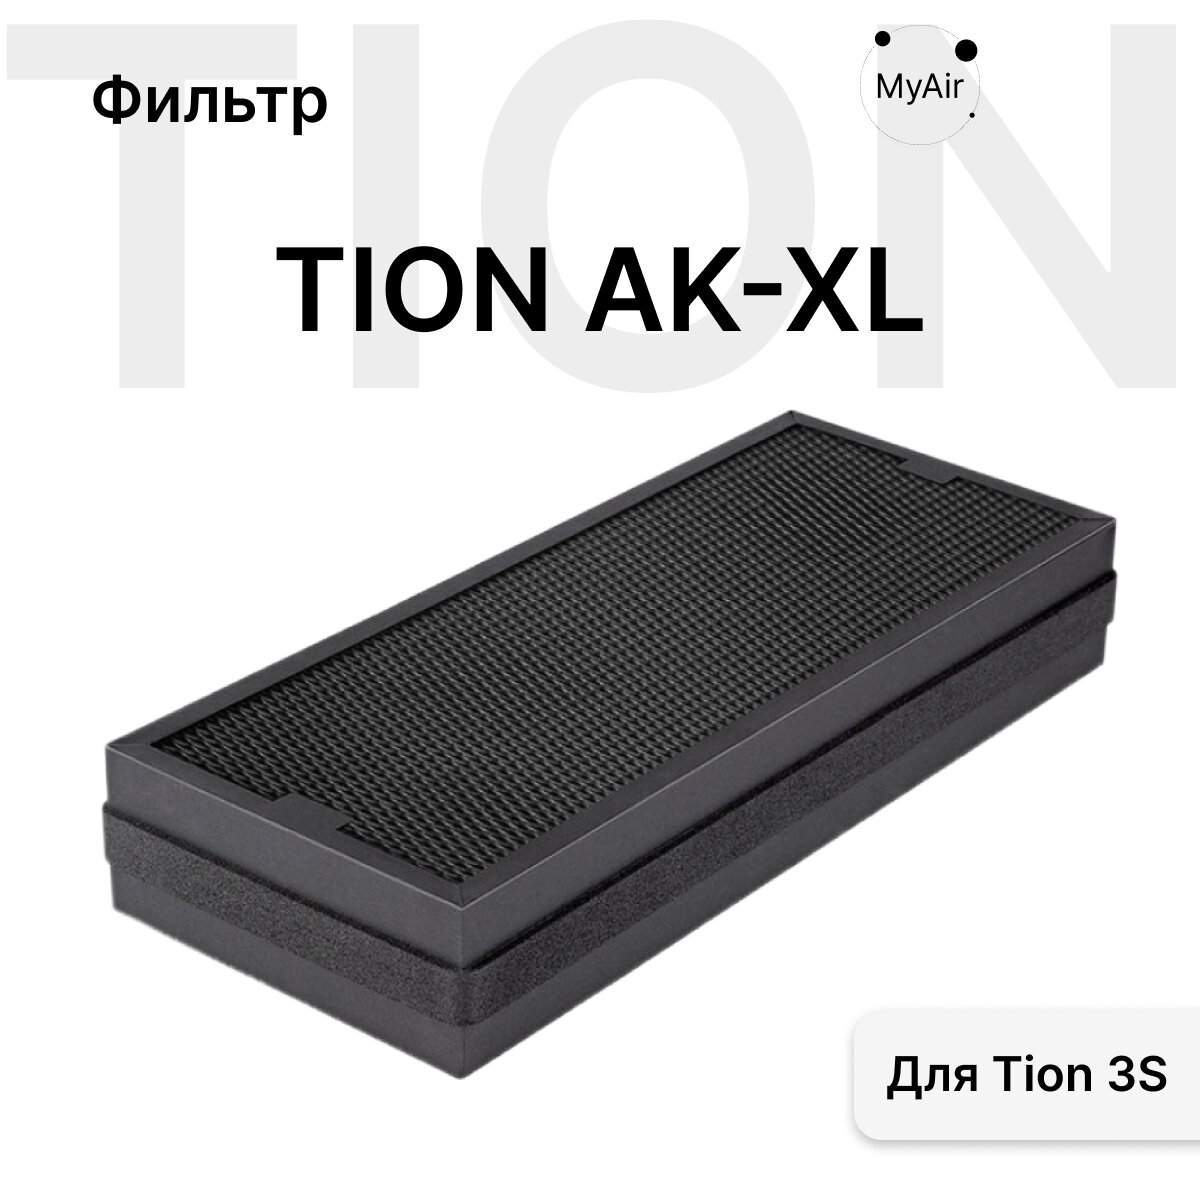 Фильтр Tion AK-XL